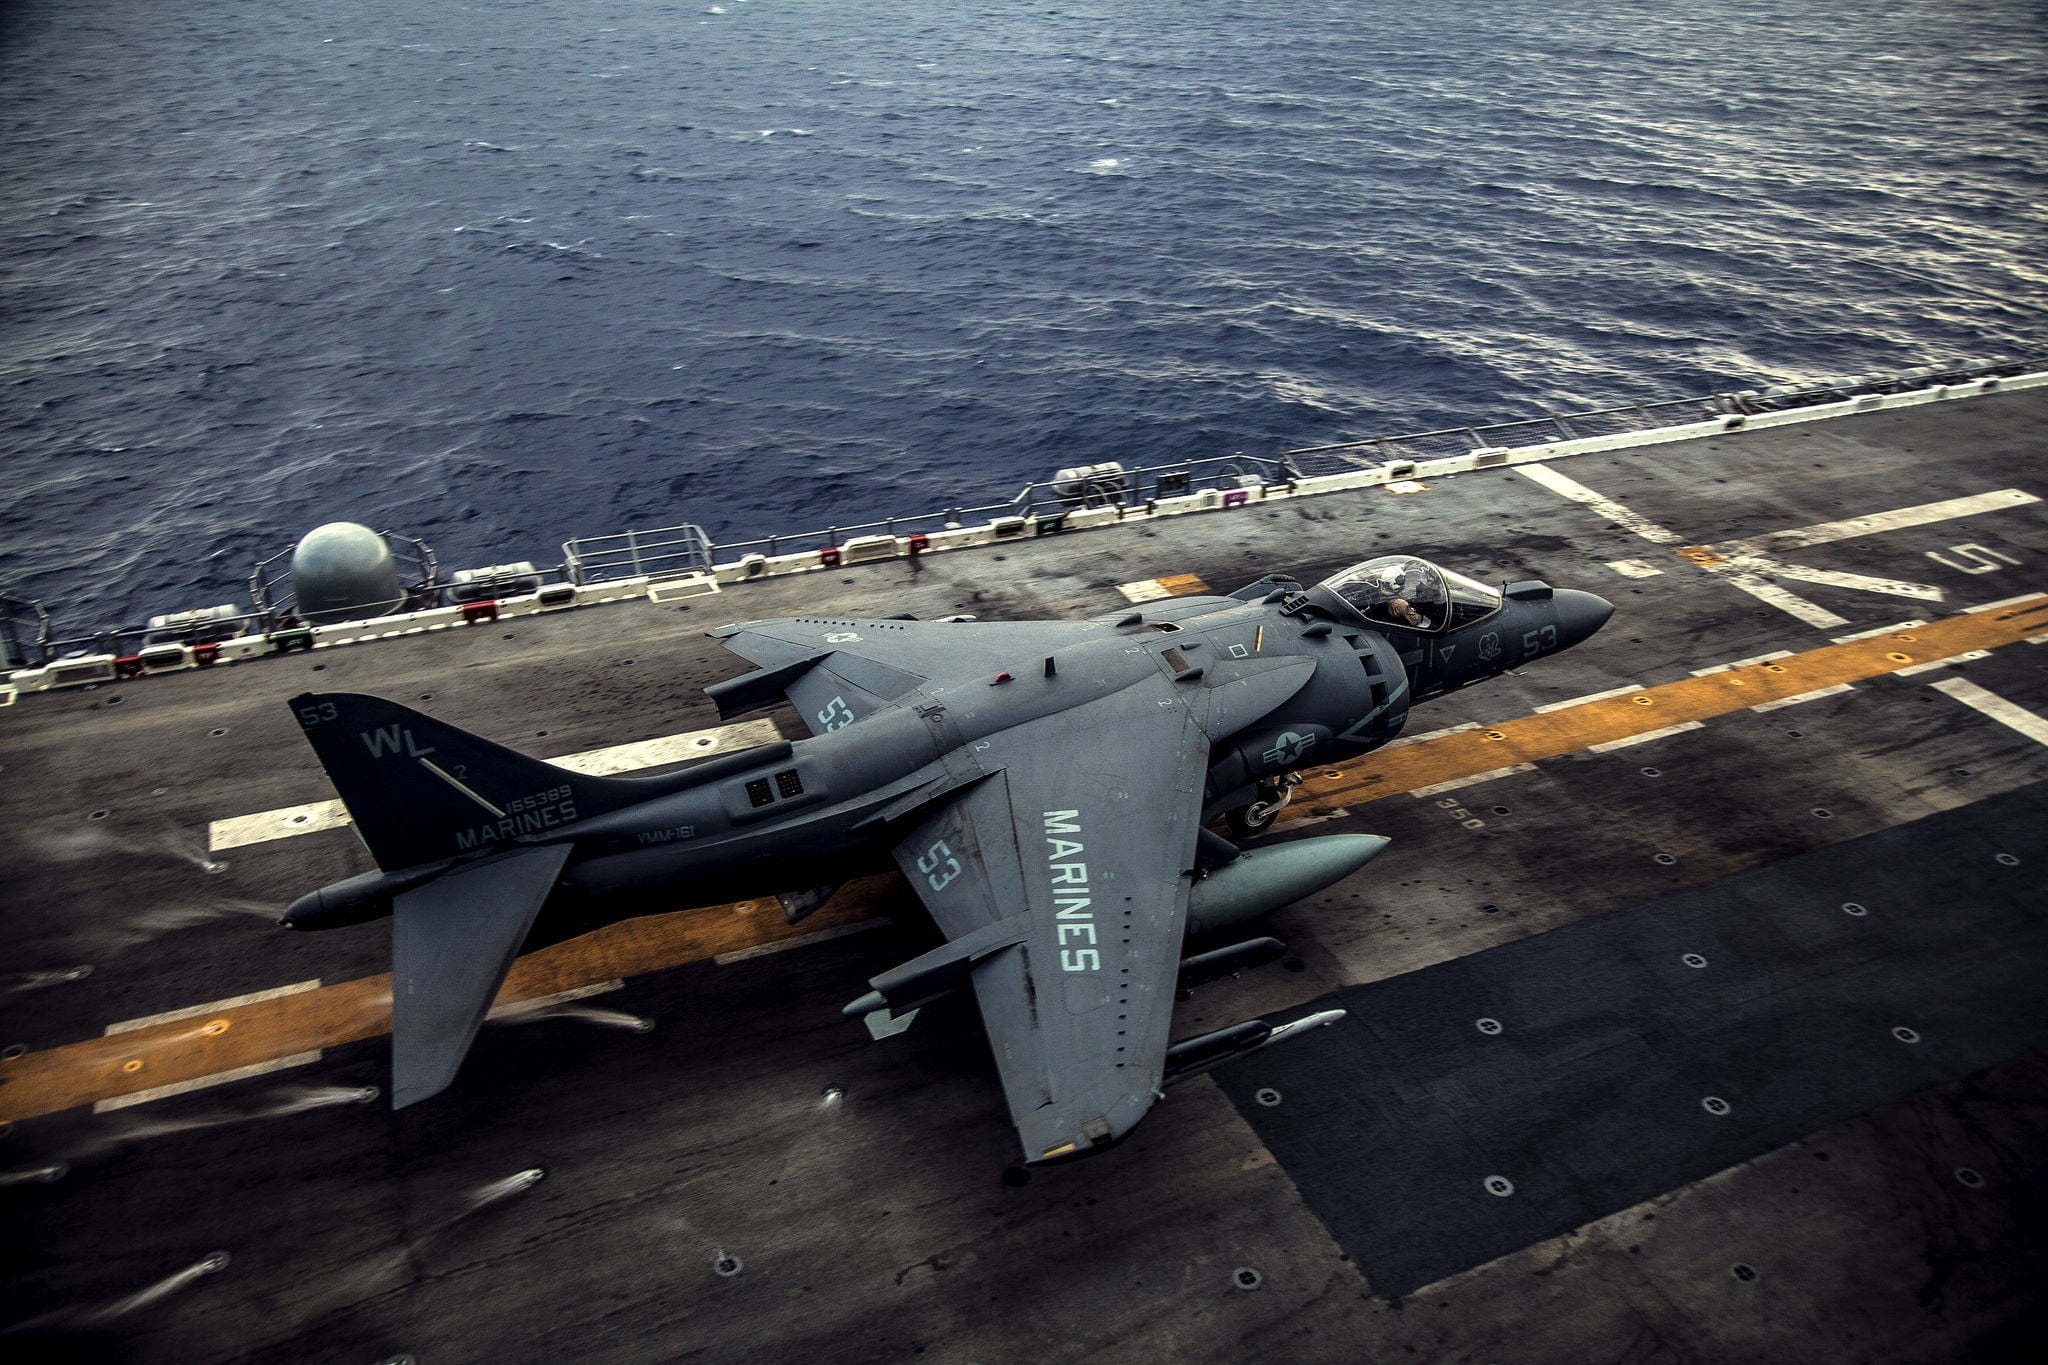 gray fighter plane, aircraft, AV-8B Harrier II, military aircraft, aircraft carrier